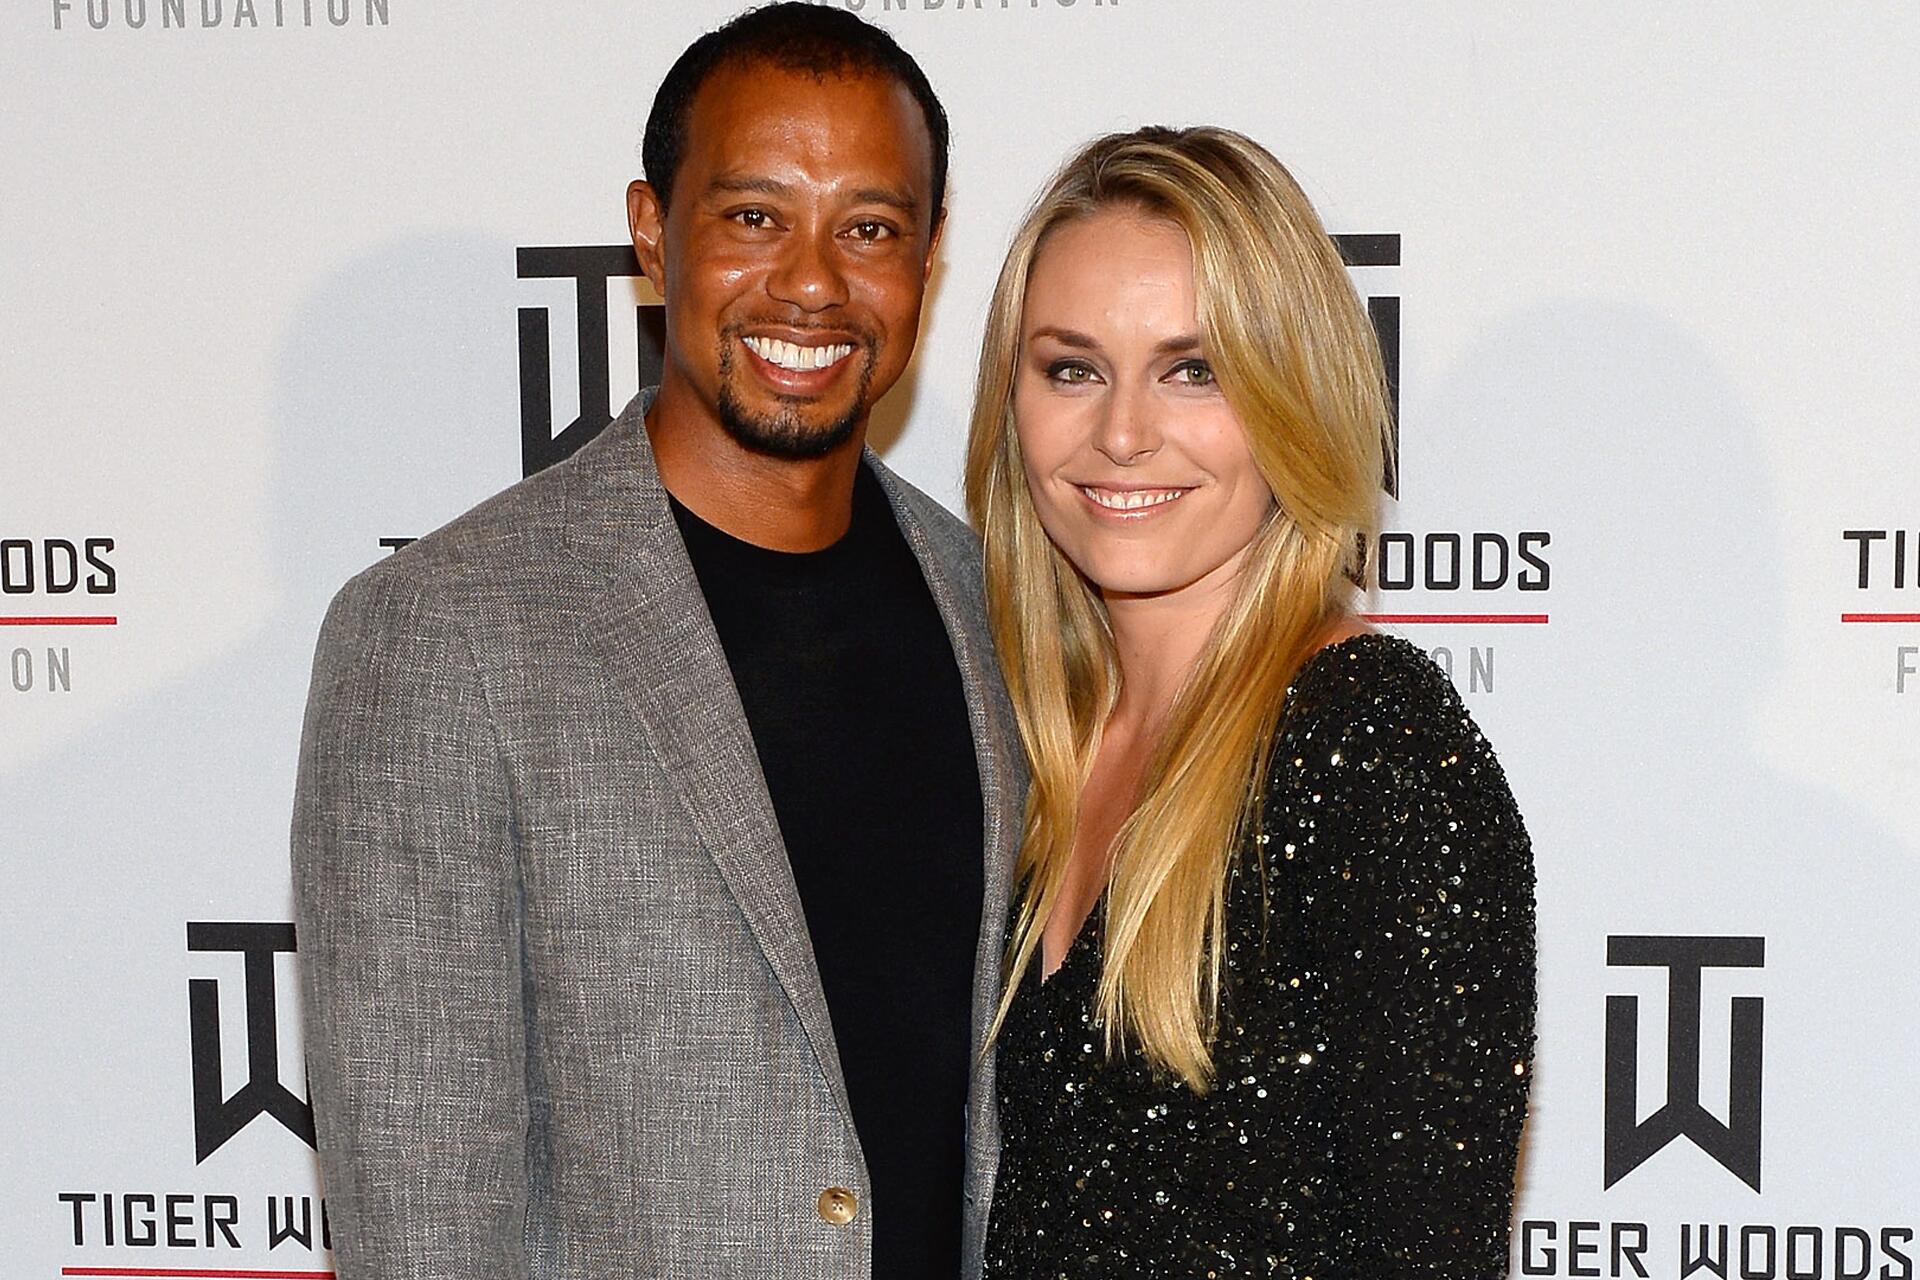 Lindsey Vonn Das Ist Der Grund Für Die Trennung Von Tiger Woods Gmx At